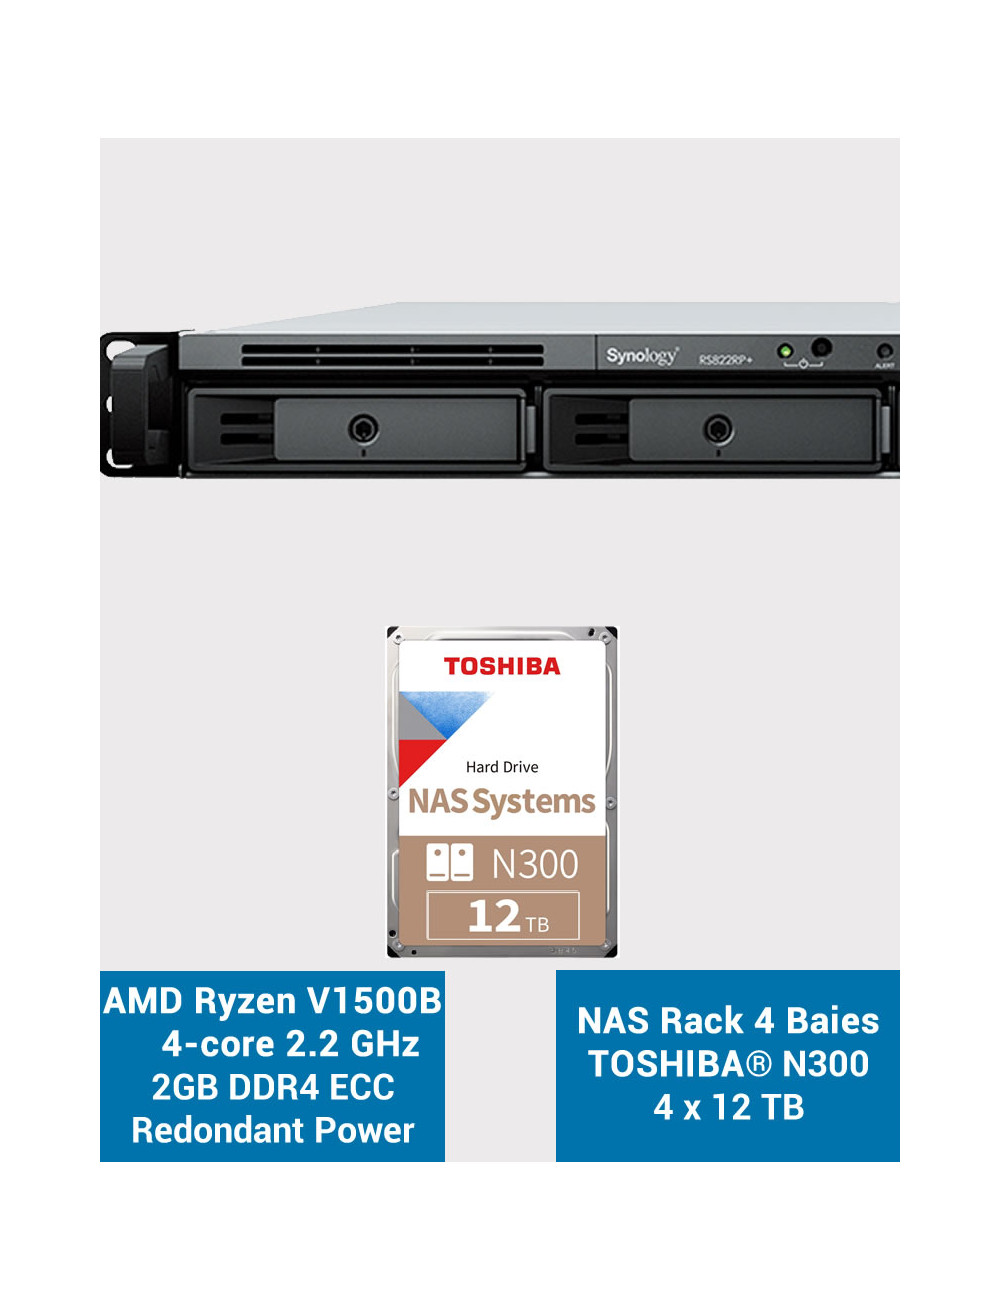 Synology RS822RP+ 2GB NAS Server Rack 1U Toshiba N300 48TB (4x12TB)